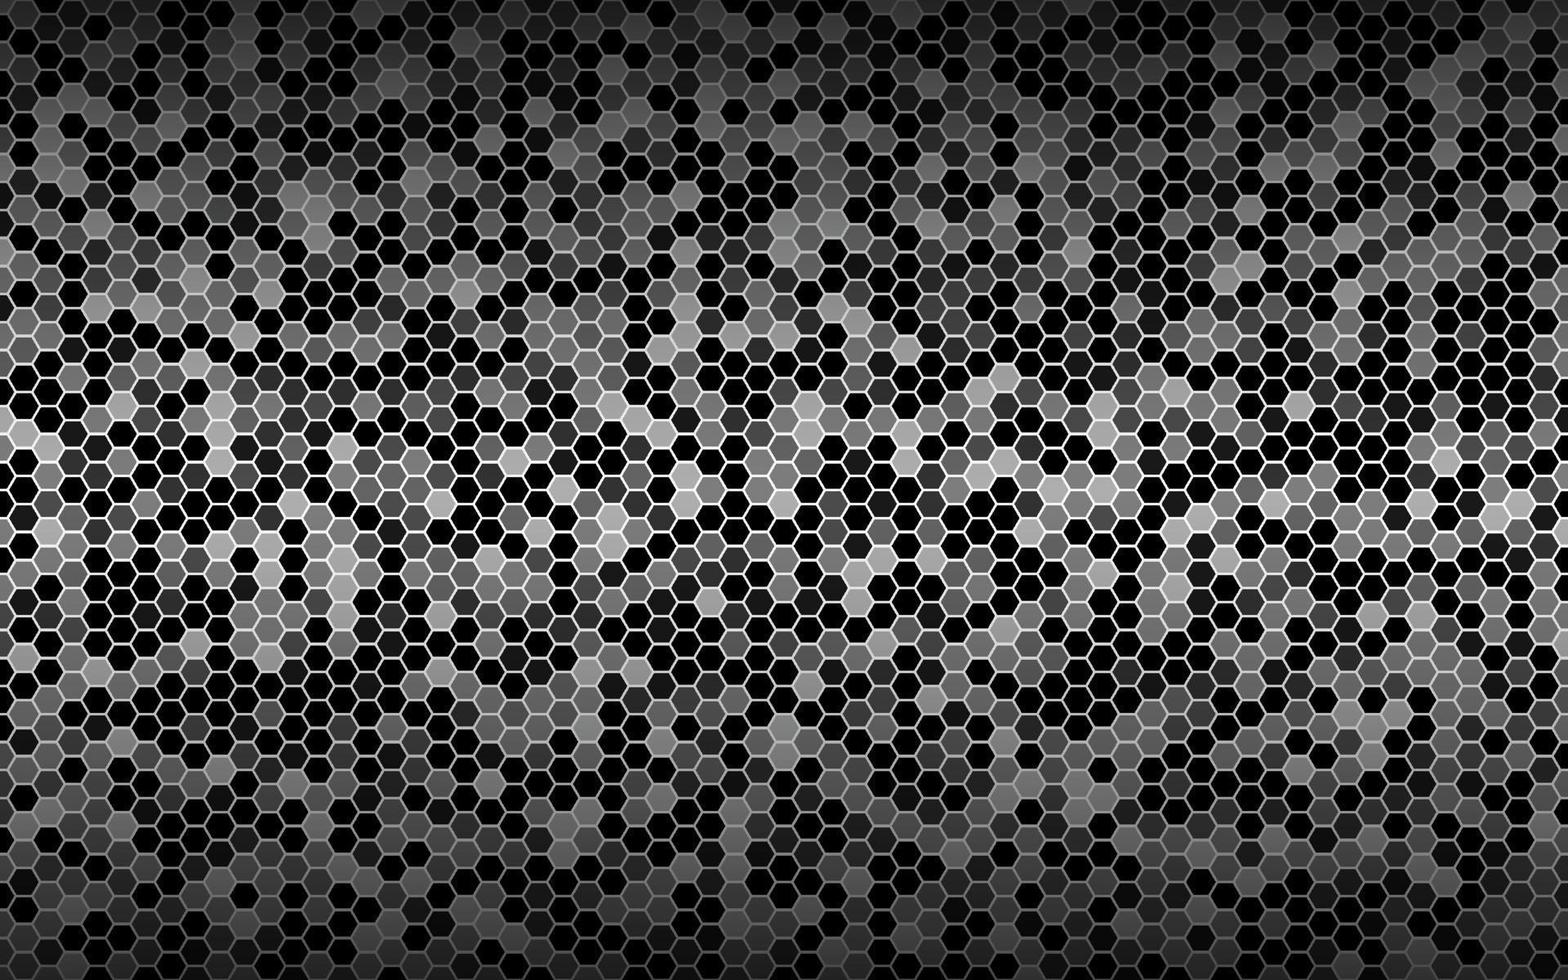 svart och vit vektorbakgrund med sexkantigt nät. modern geometrisk textur. enkel designillustration vektor